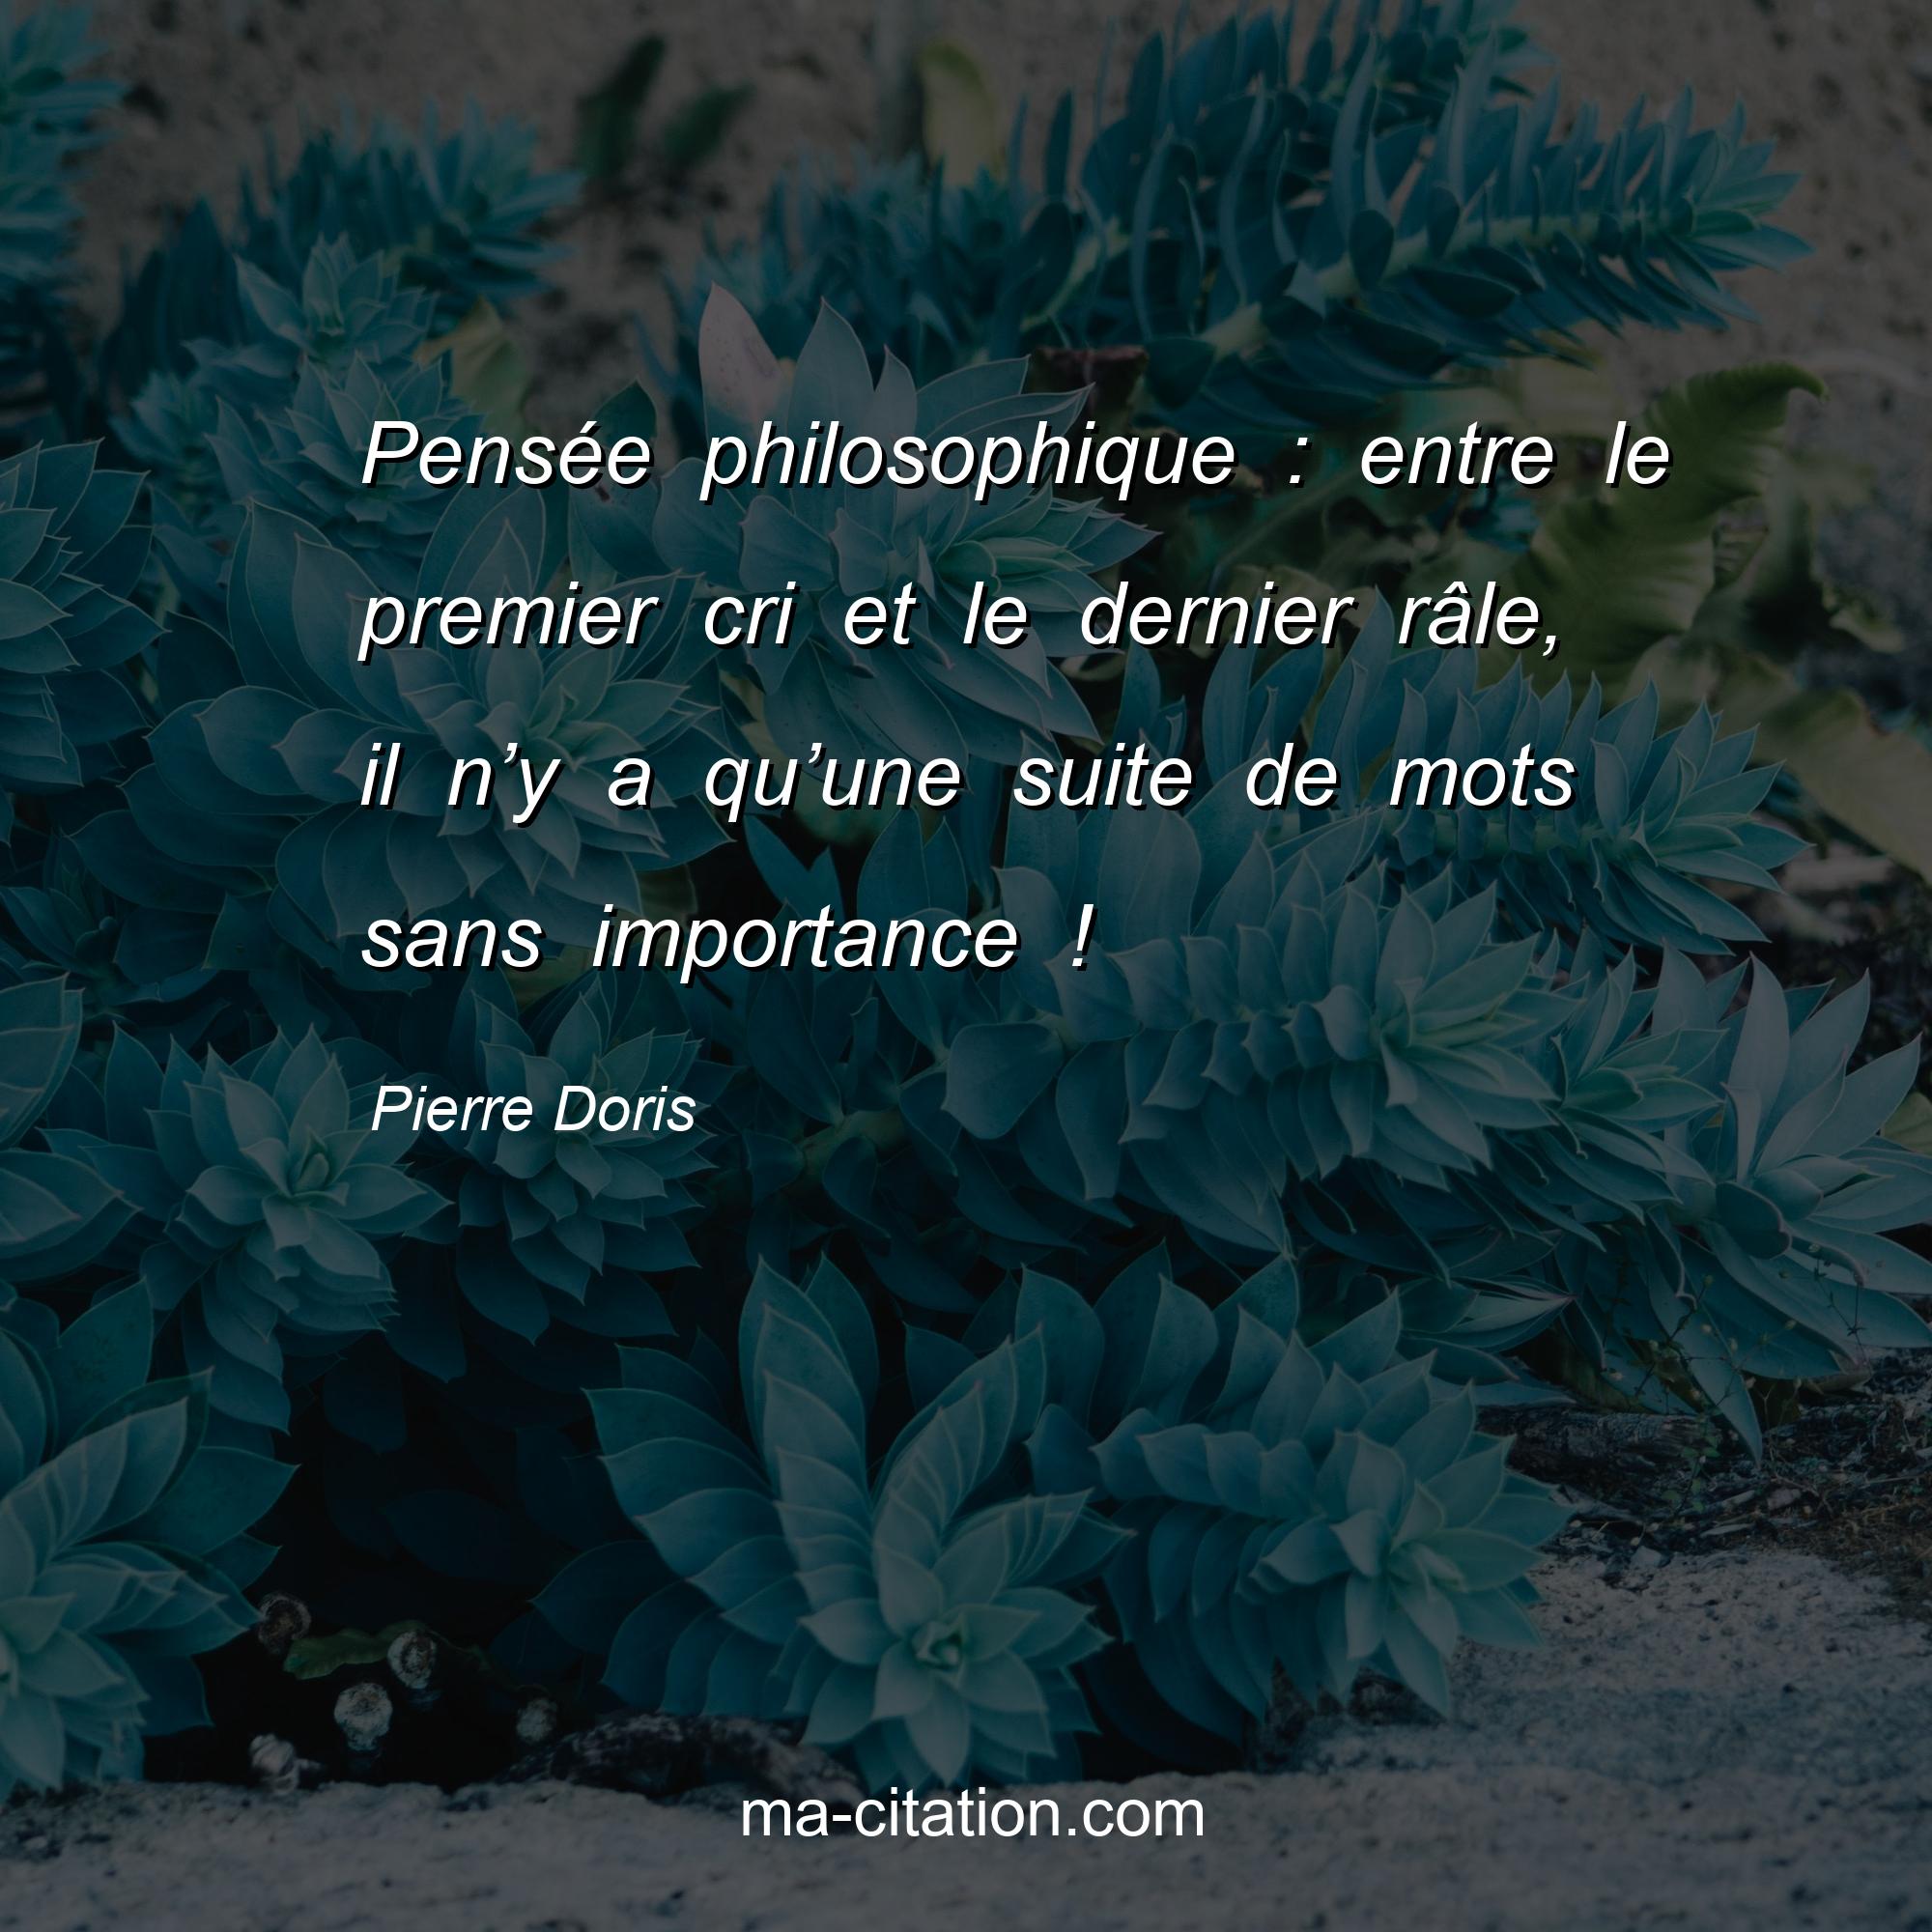 Pierre Doris : Pensée philosophique : entre le premier cri et le dernier râle, il n’y a qu’une suite de mots sans importance !